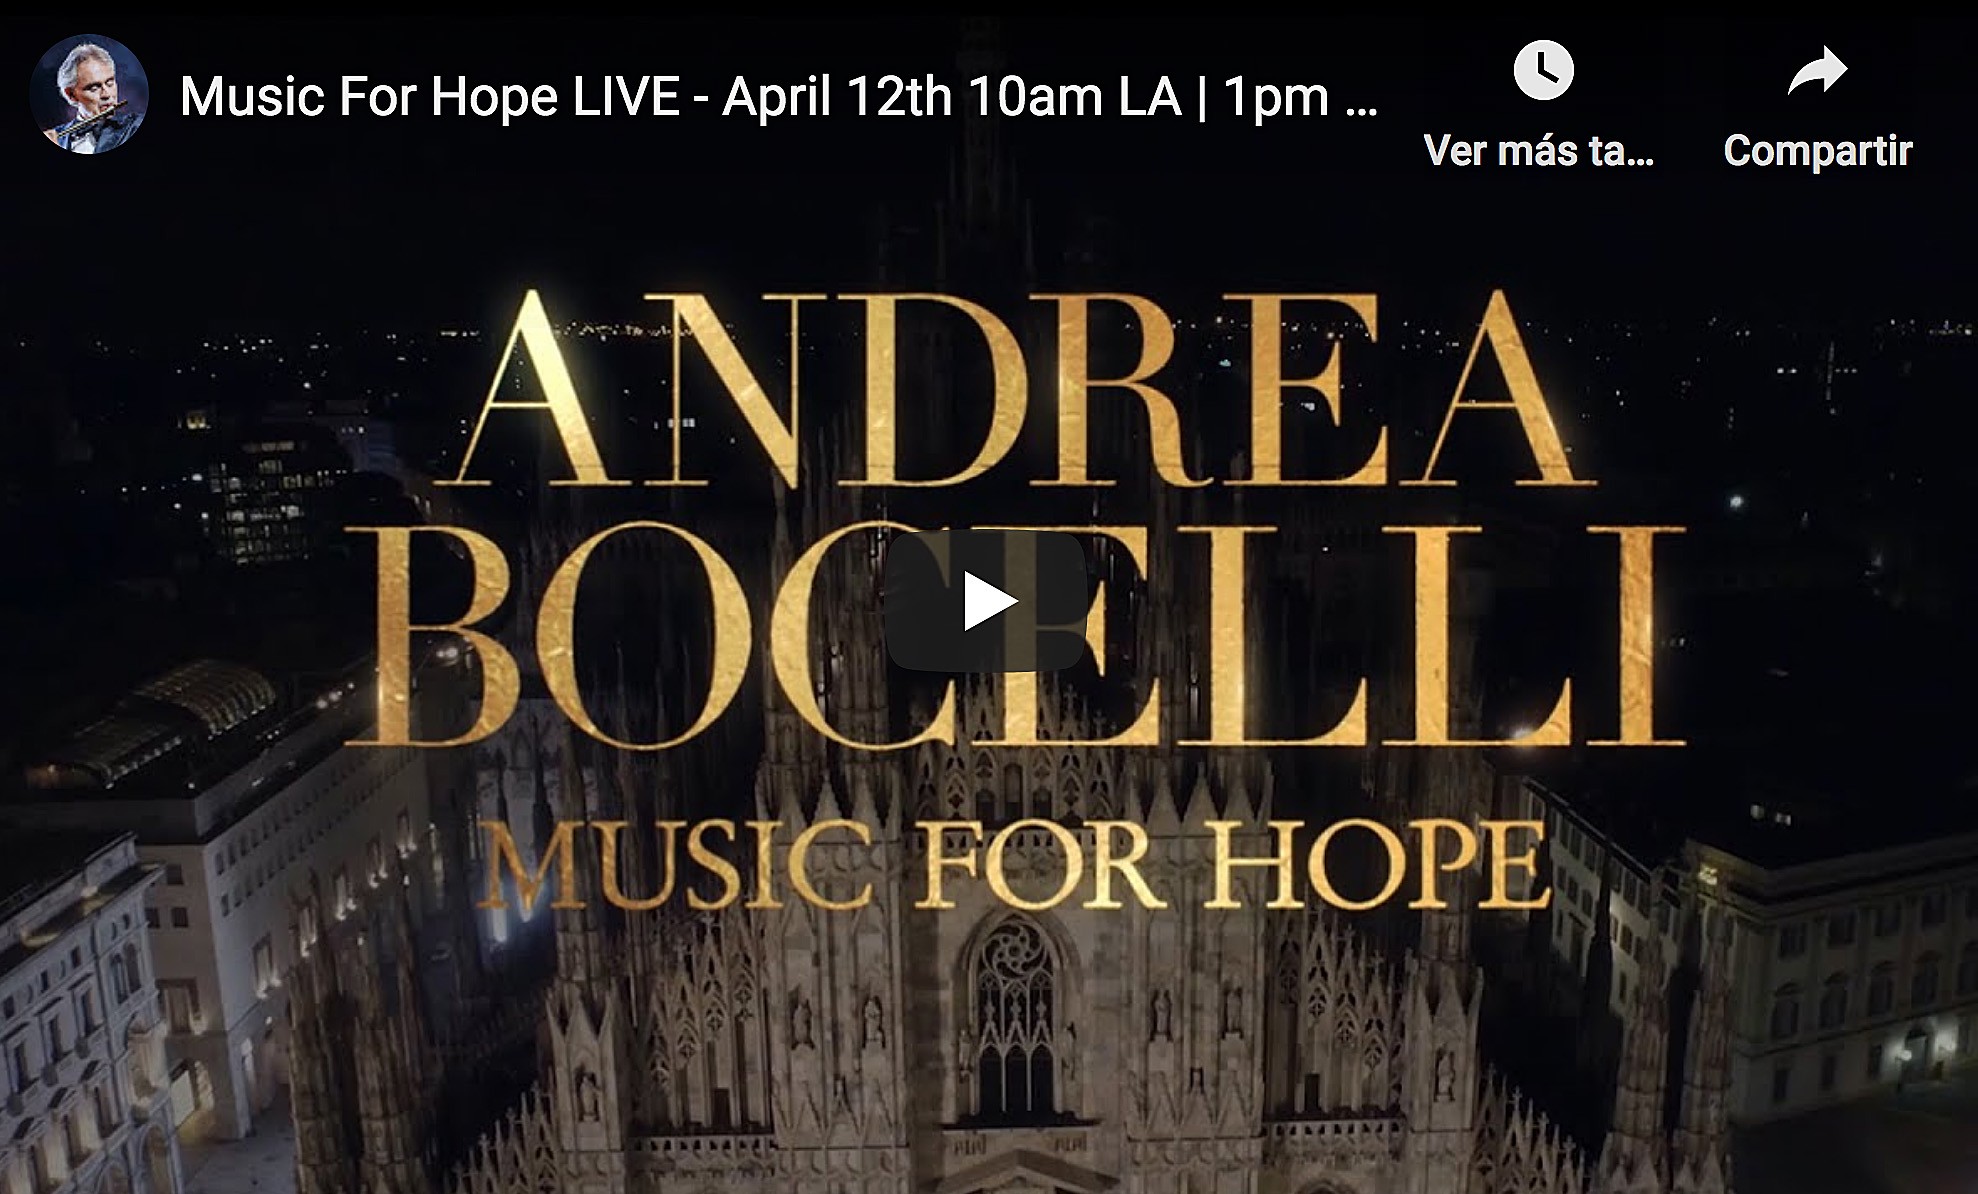 Andrea Bocelli cantará al mundo en directo desde el Duomo de Milán